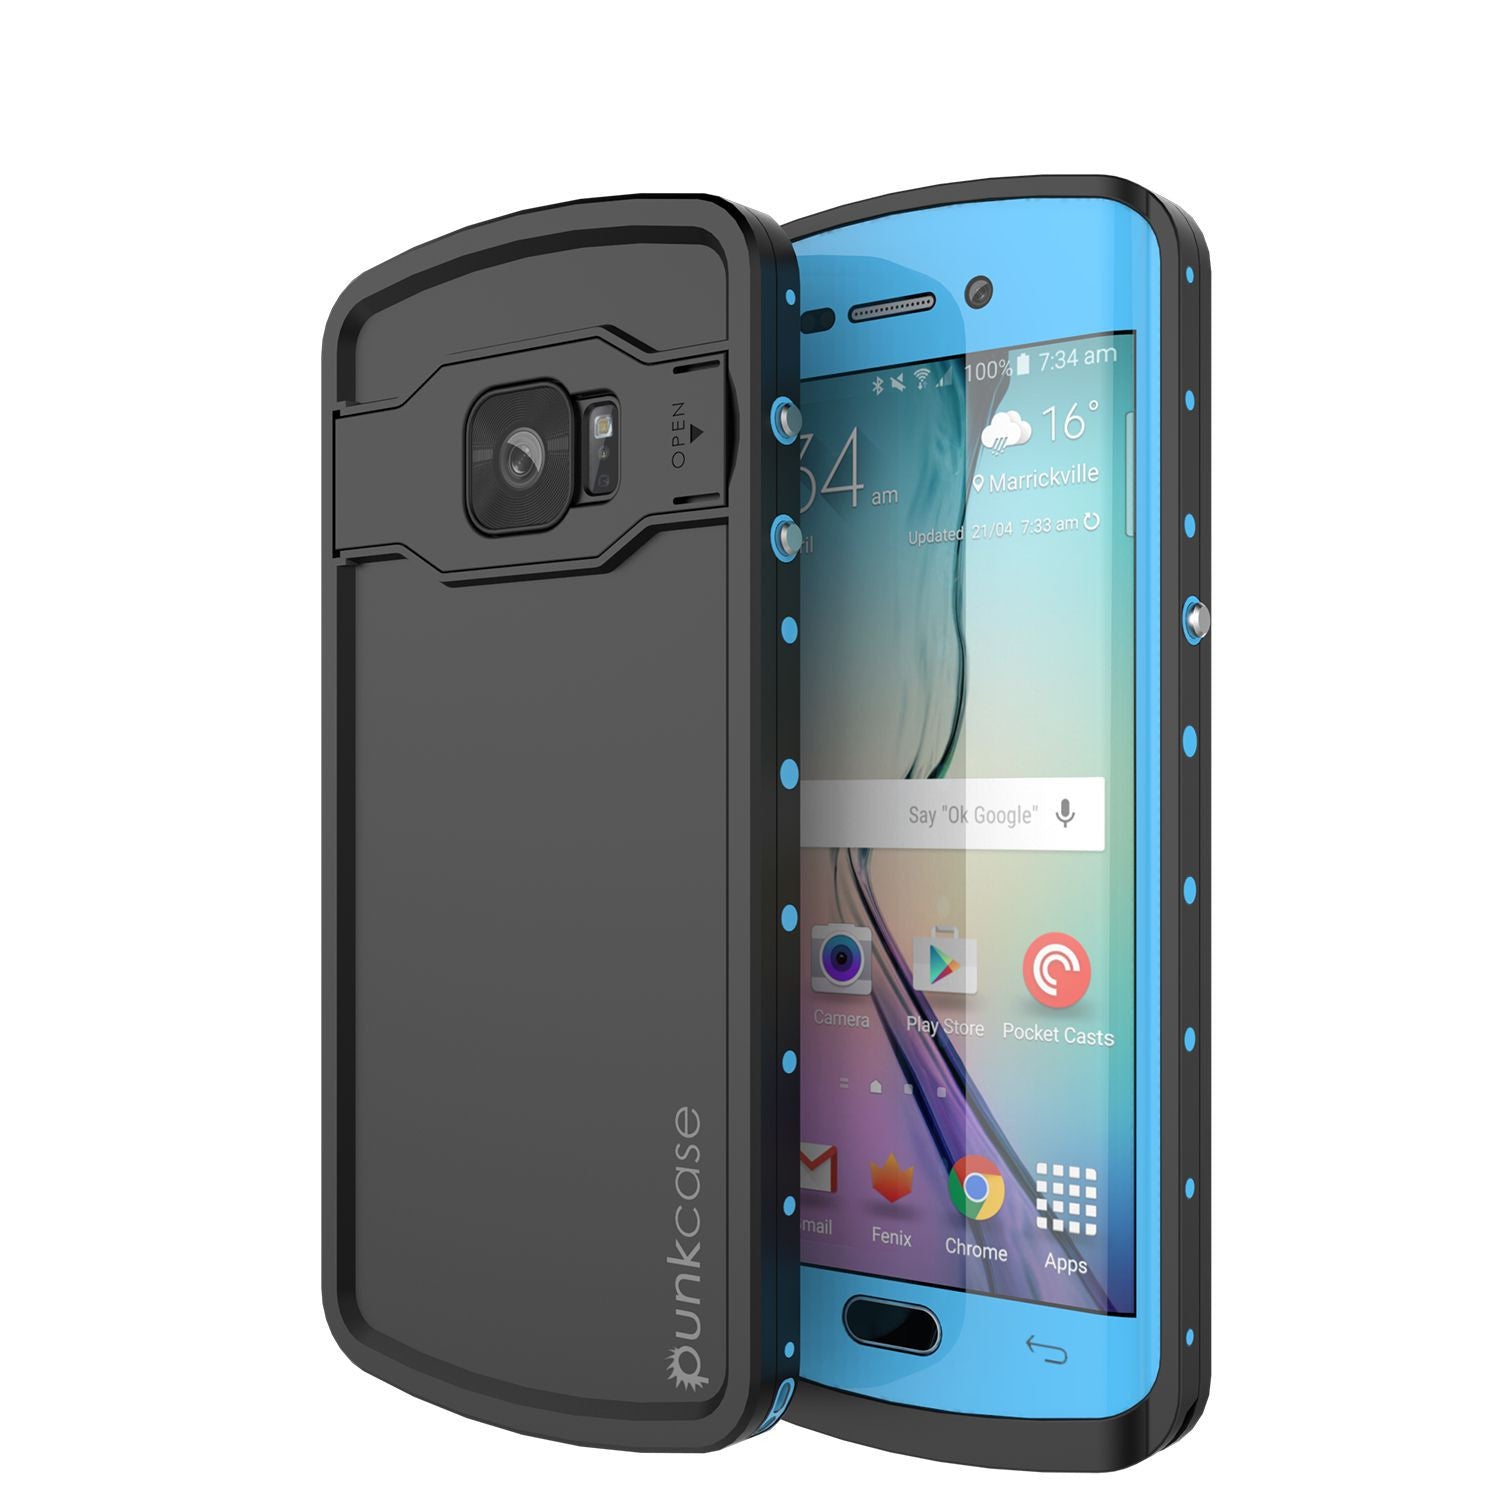 Galaxy s6 EDGE Plus Waterproof Case, Punkcase StudStar Light Blue Series | Lifetime Warranty (Color in image: light blue)